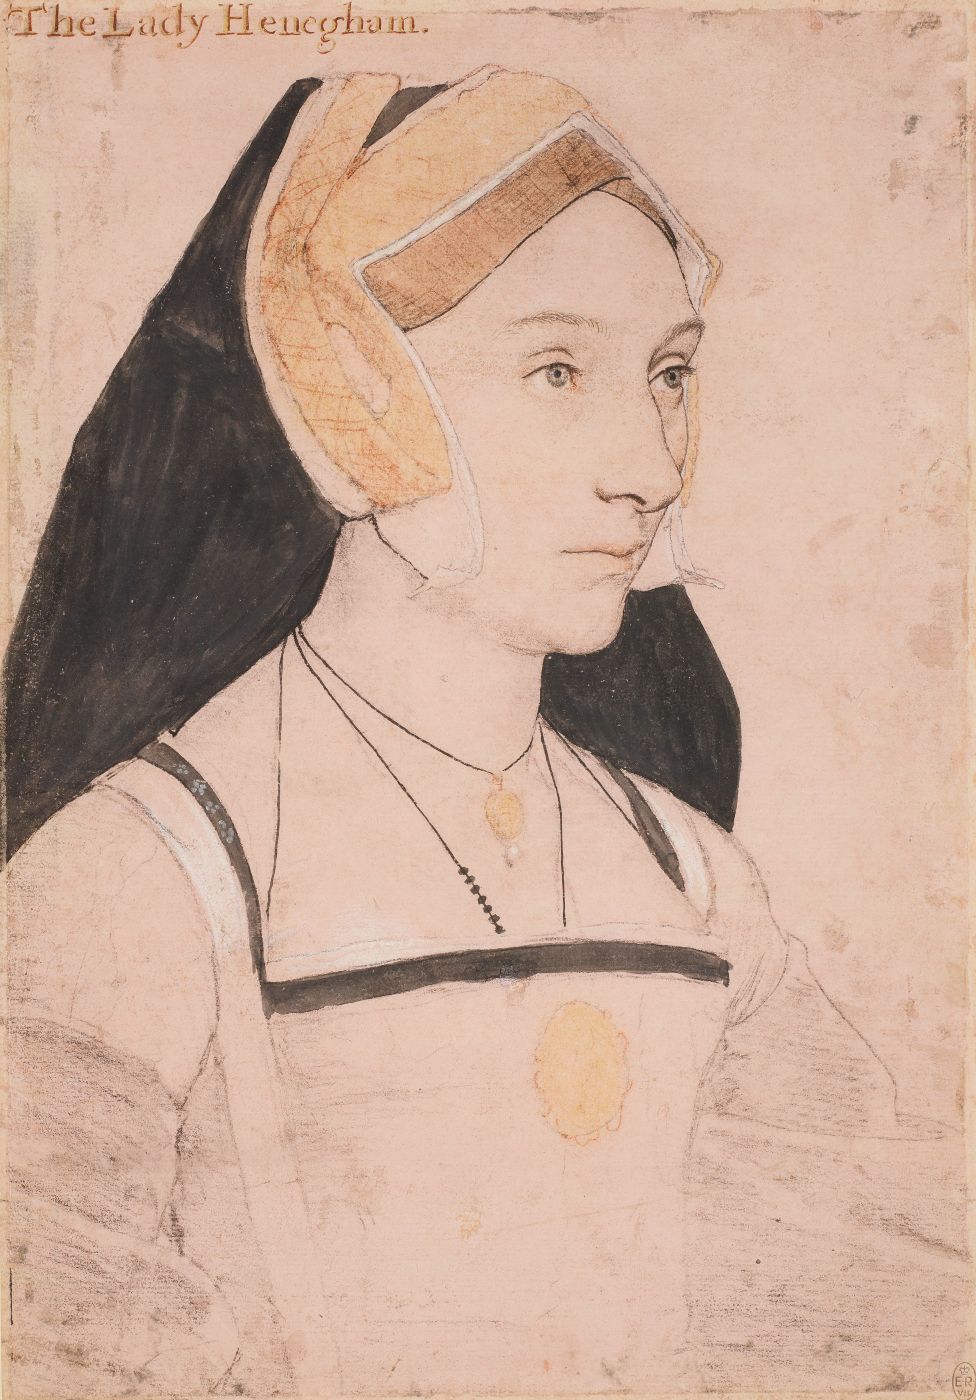 Mary Shelton (später Lady Heveningham) in einer Skizze von Holbein